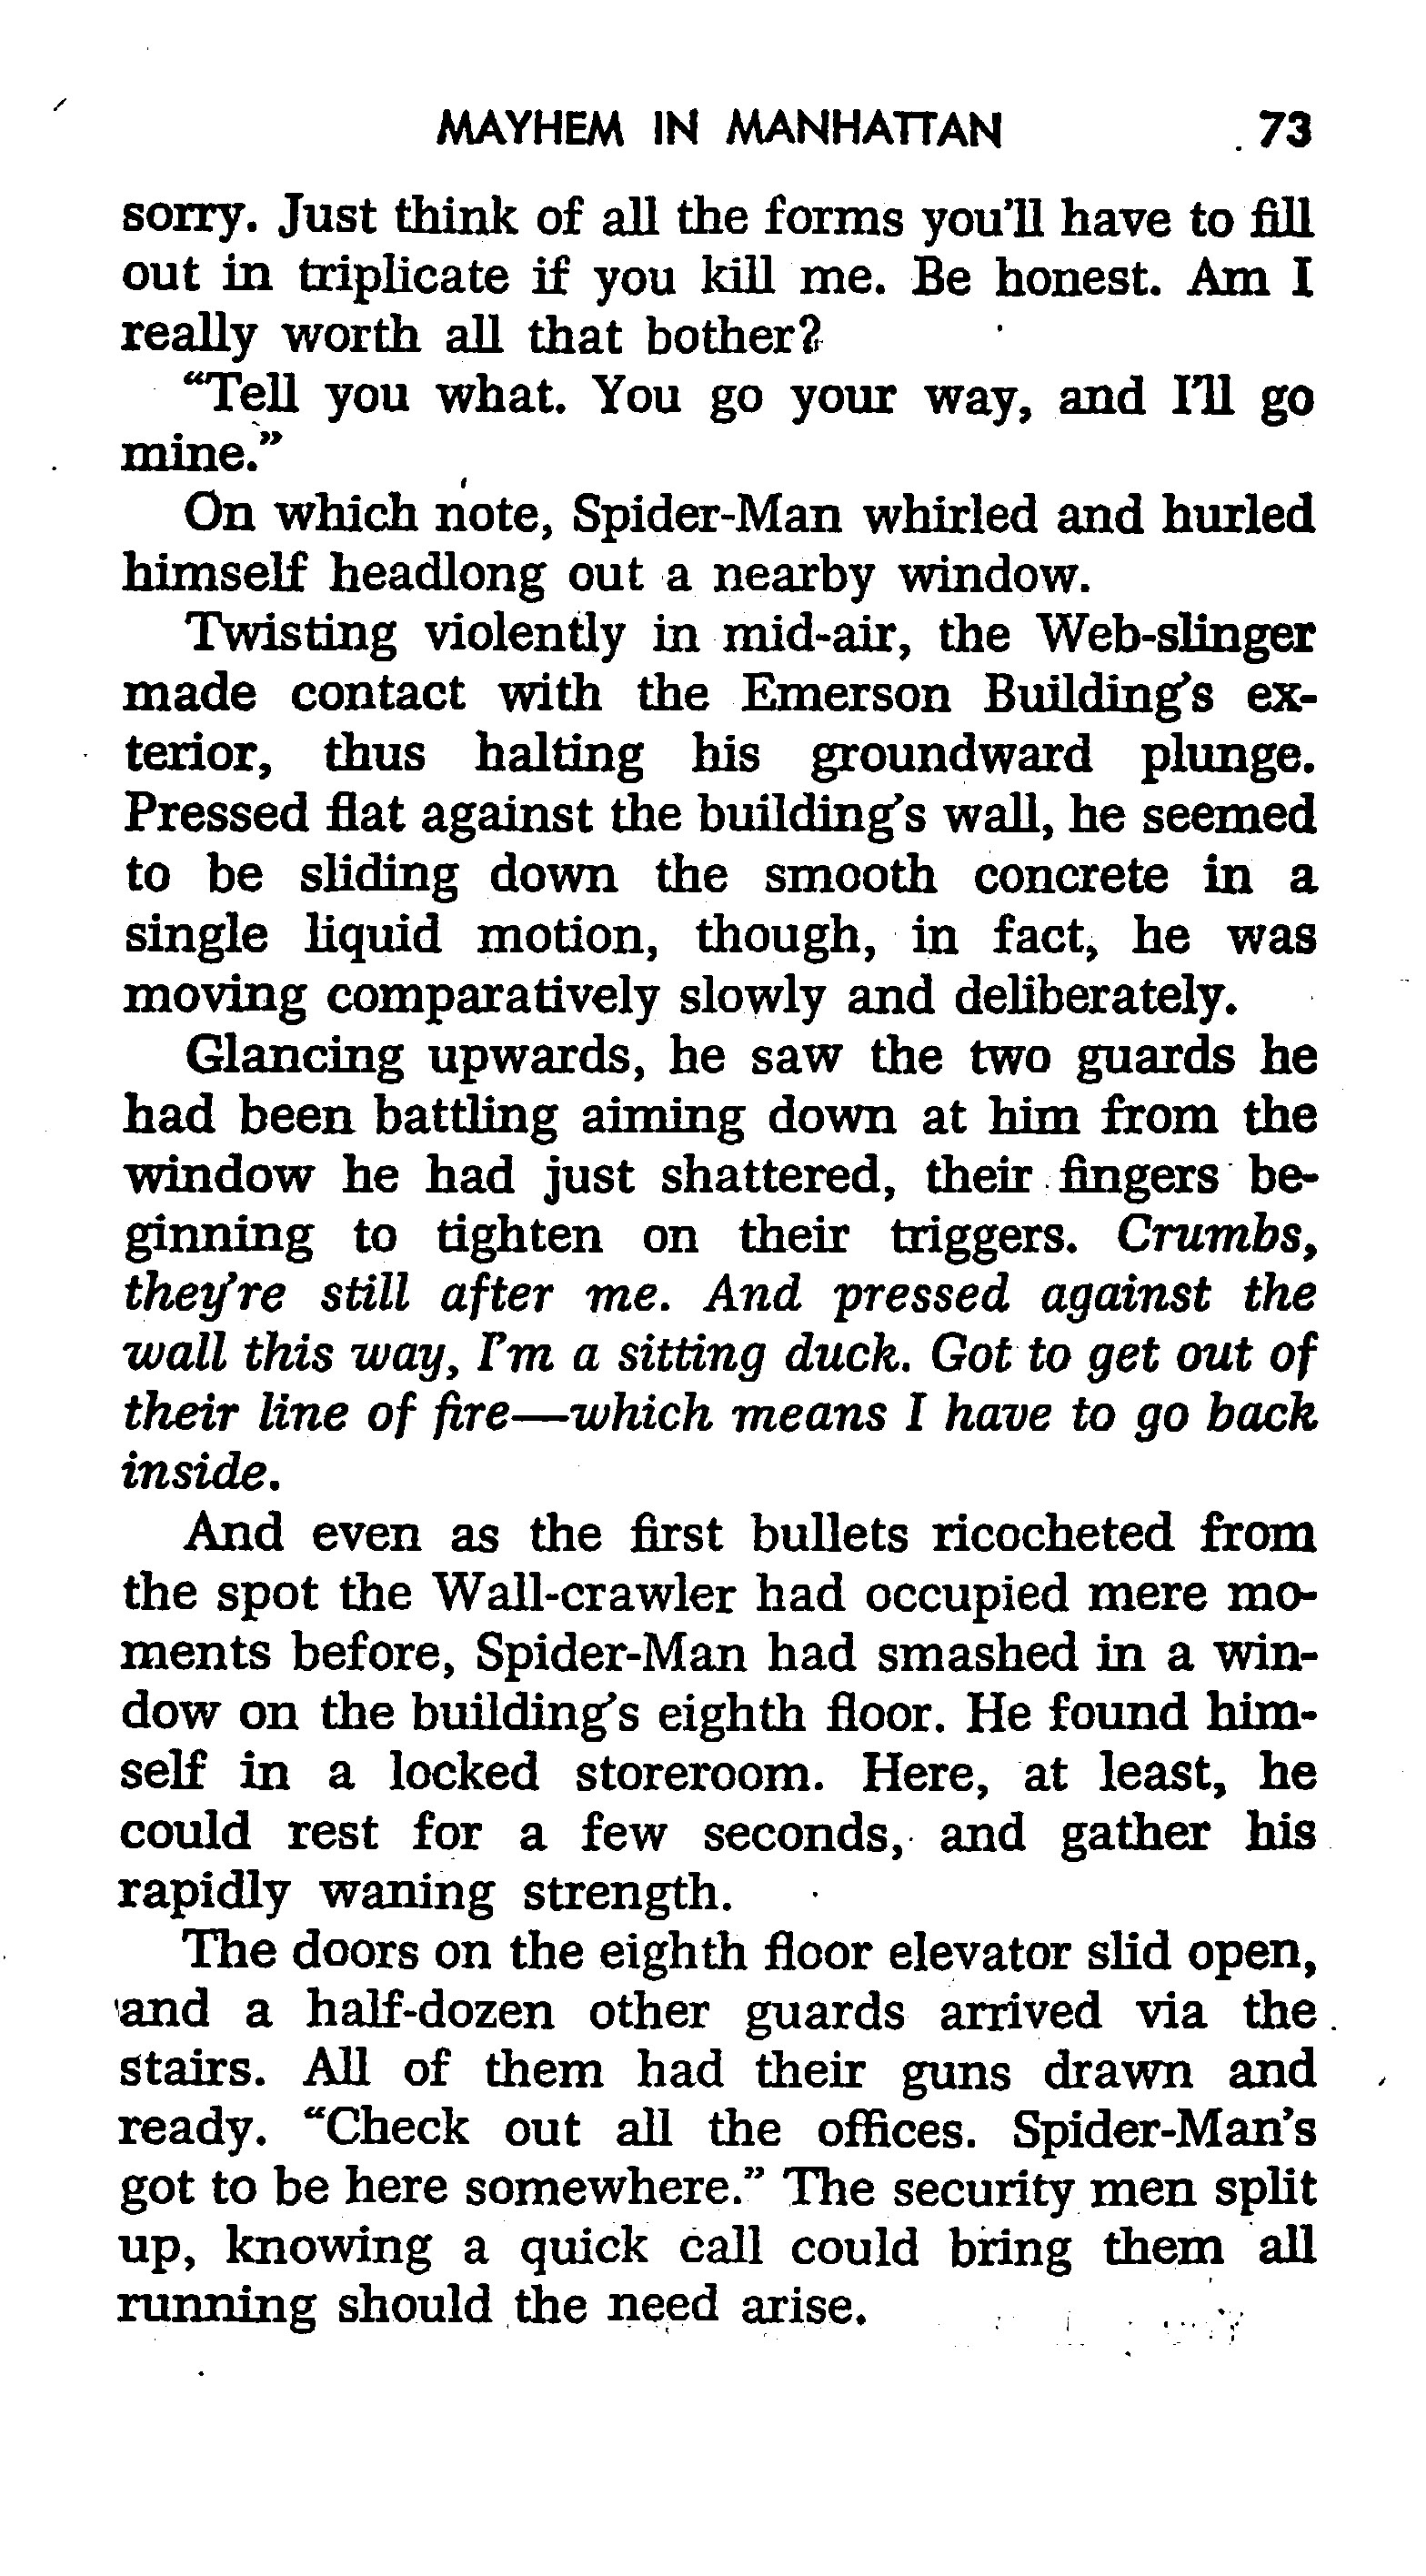 Read online The Amazing Spider-Man: Mayhem in Manhattan comic -  Issue # TPB (Part 1) - 74